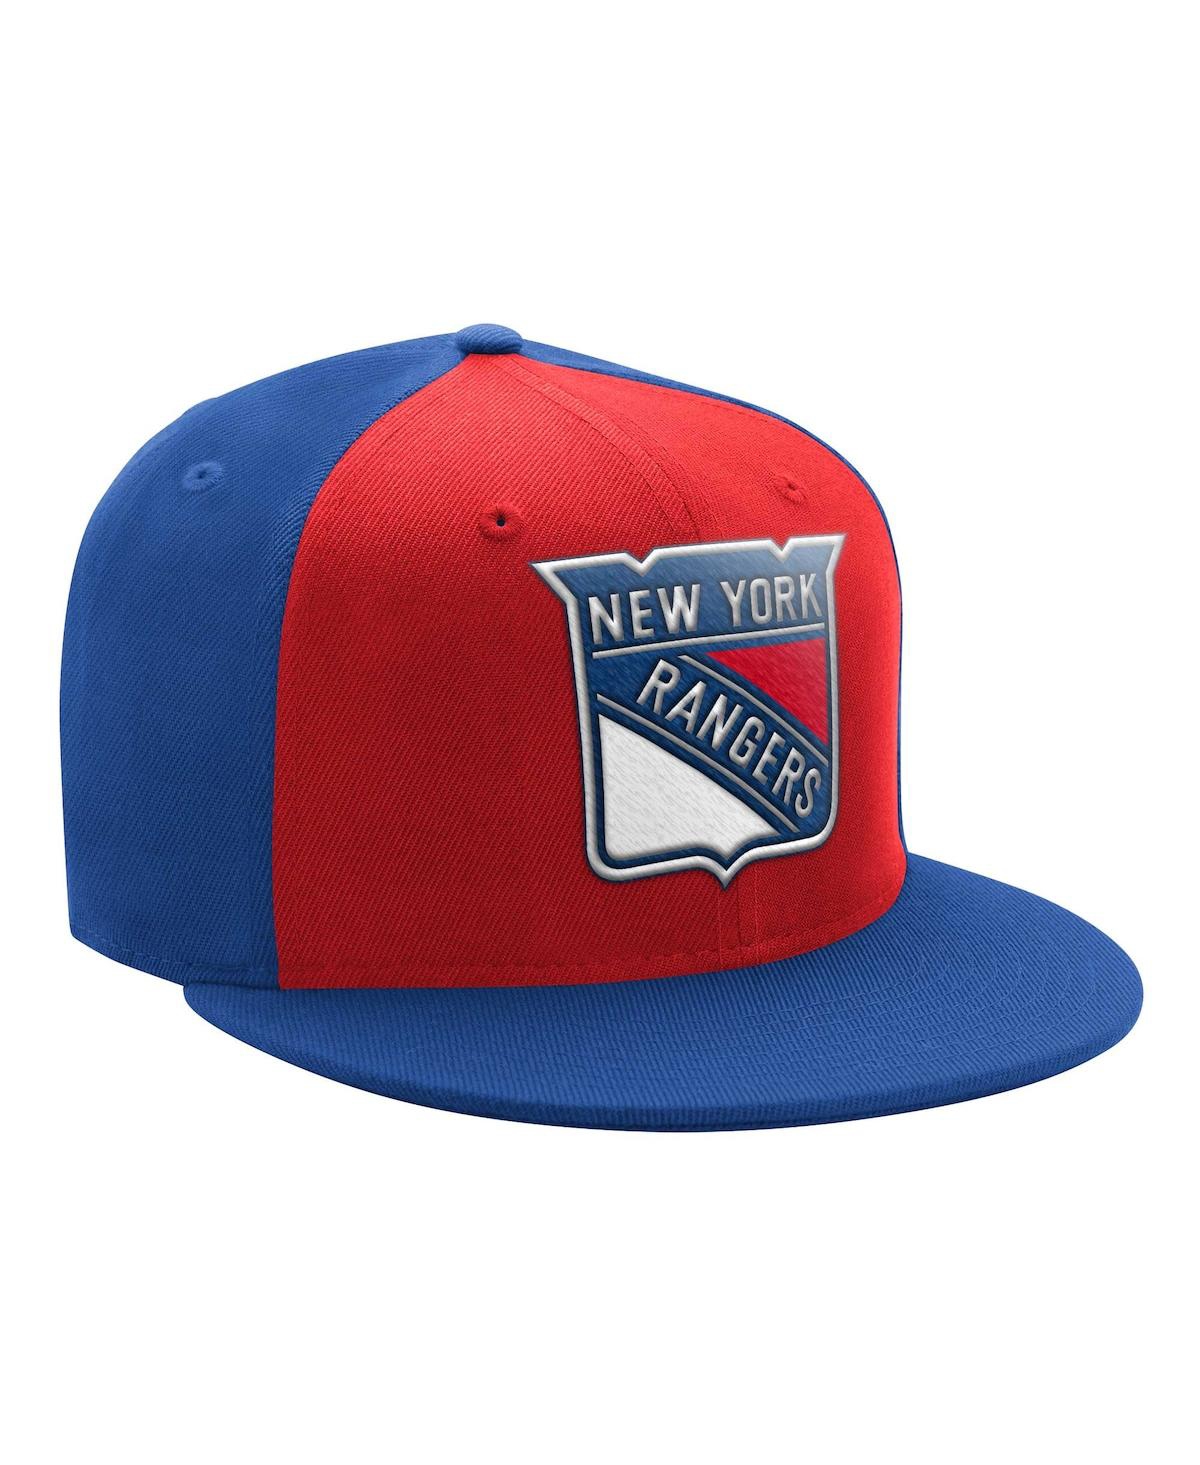 Men's Starter Red, Blue New York Rangers Logo Two-Tone Snapback Hat - Red, Blue